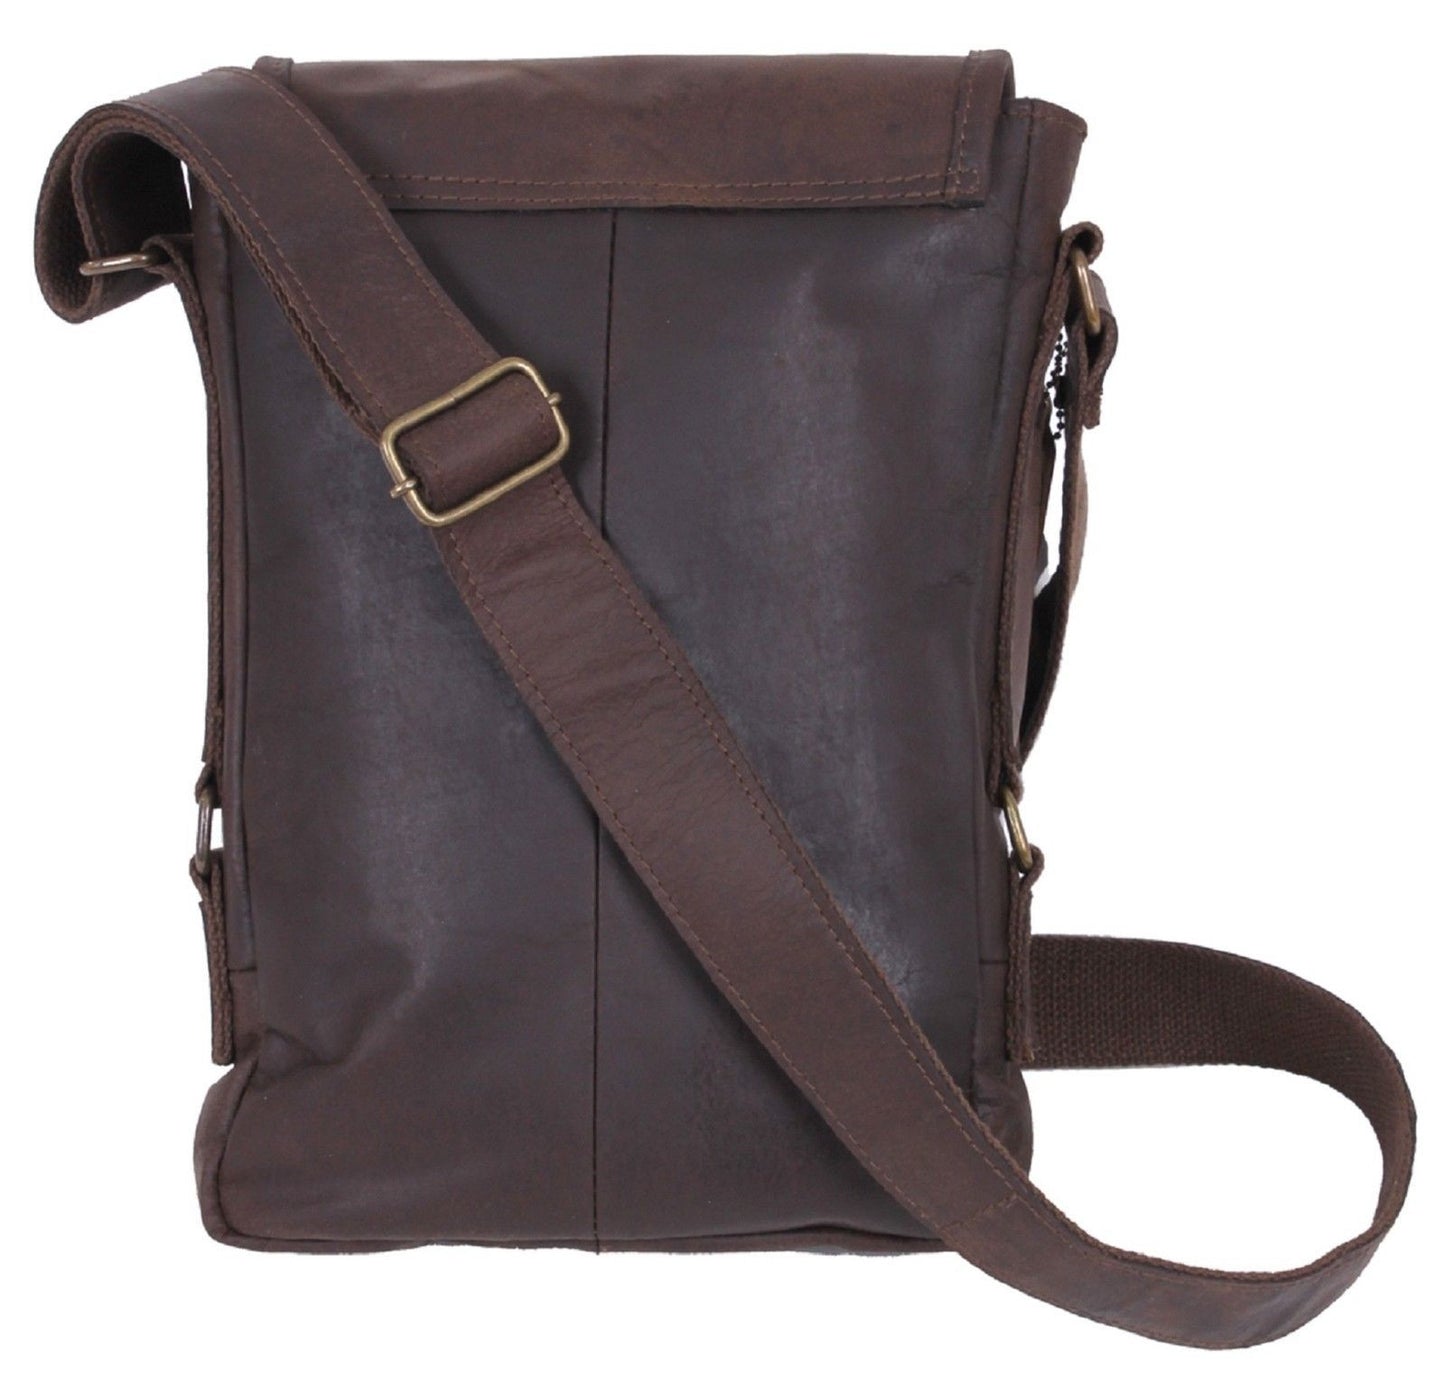 Durable & Stylish Brown Leather Tech Tablet Messenger Bag Rothco